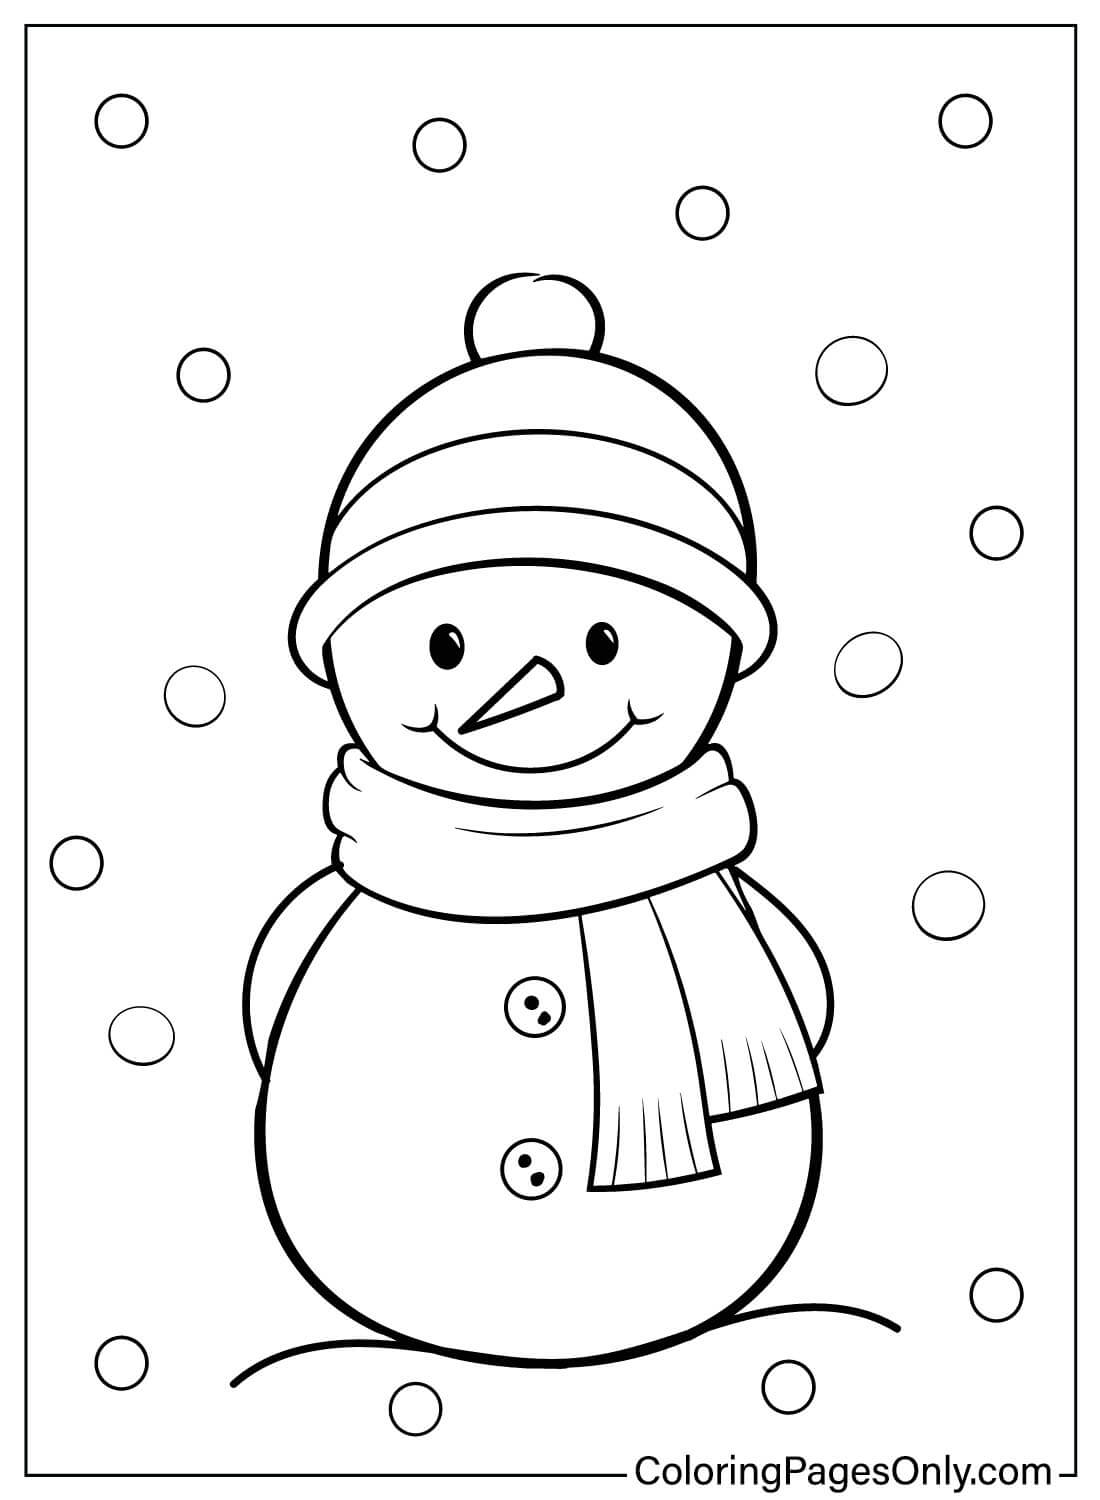 Disegni da colorare di pupazzo di neve per bambini